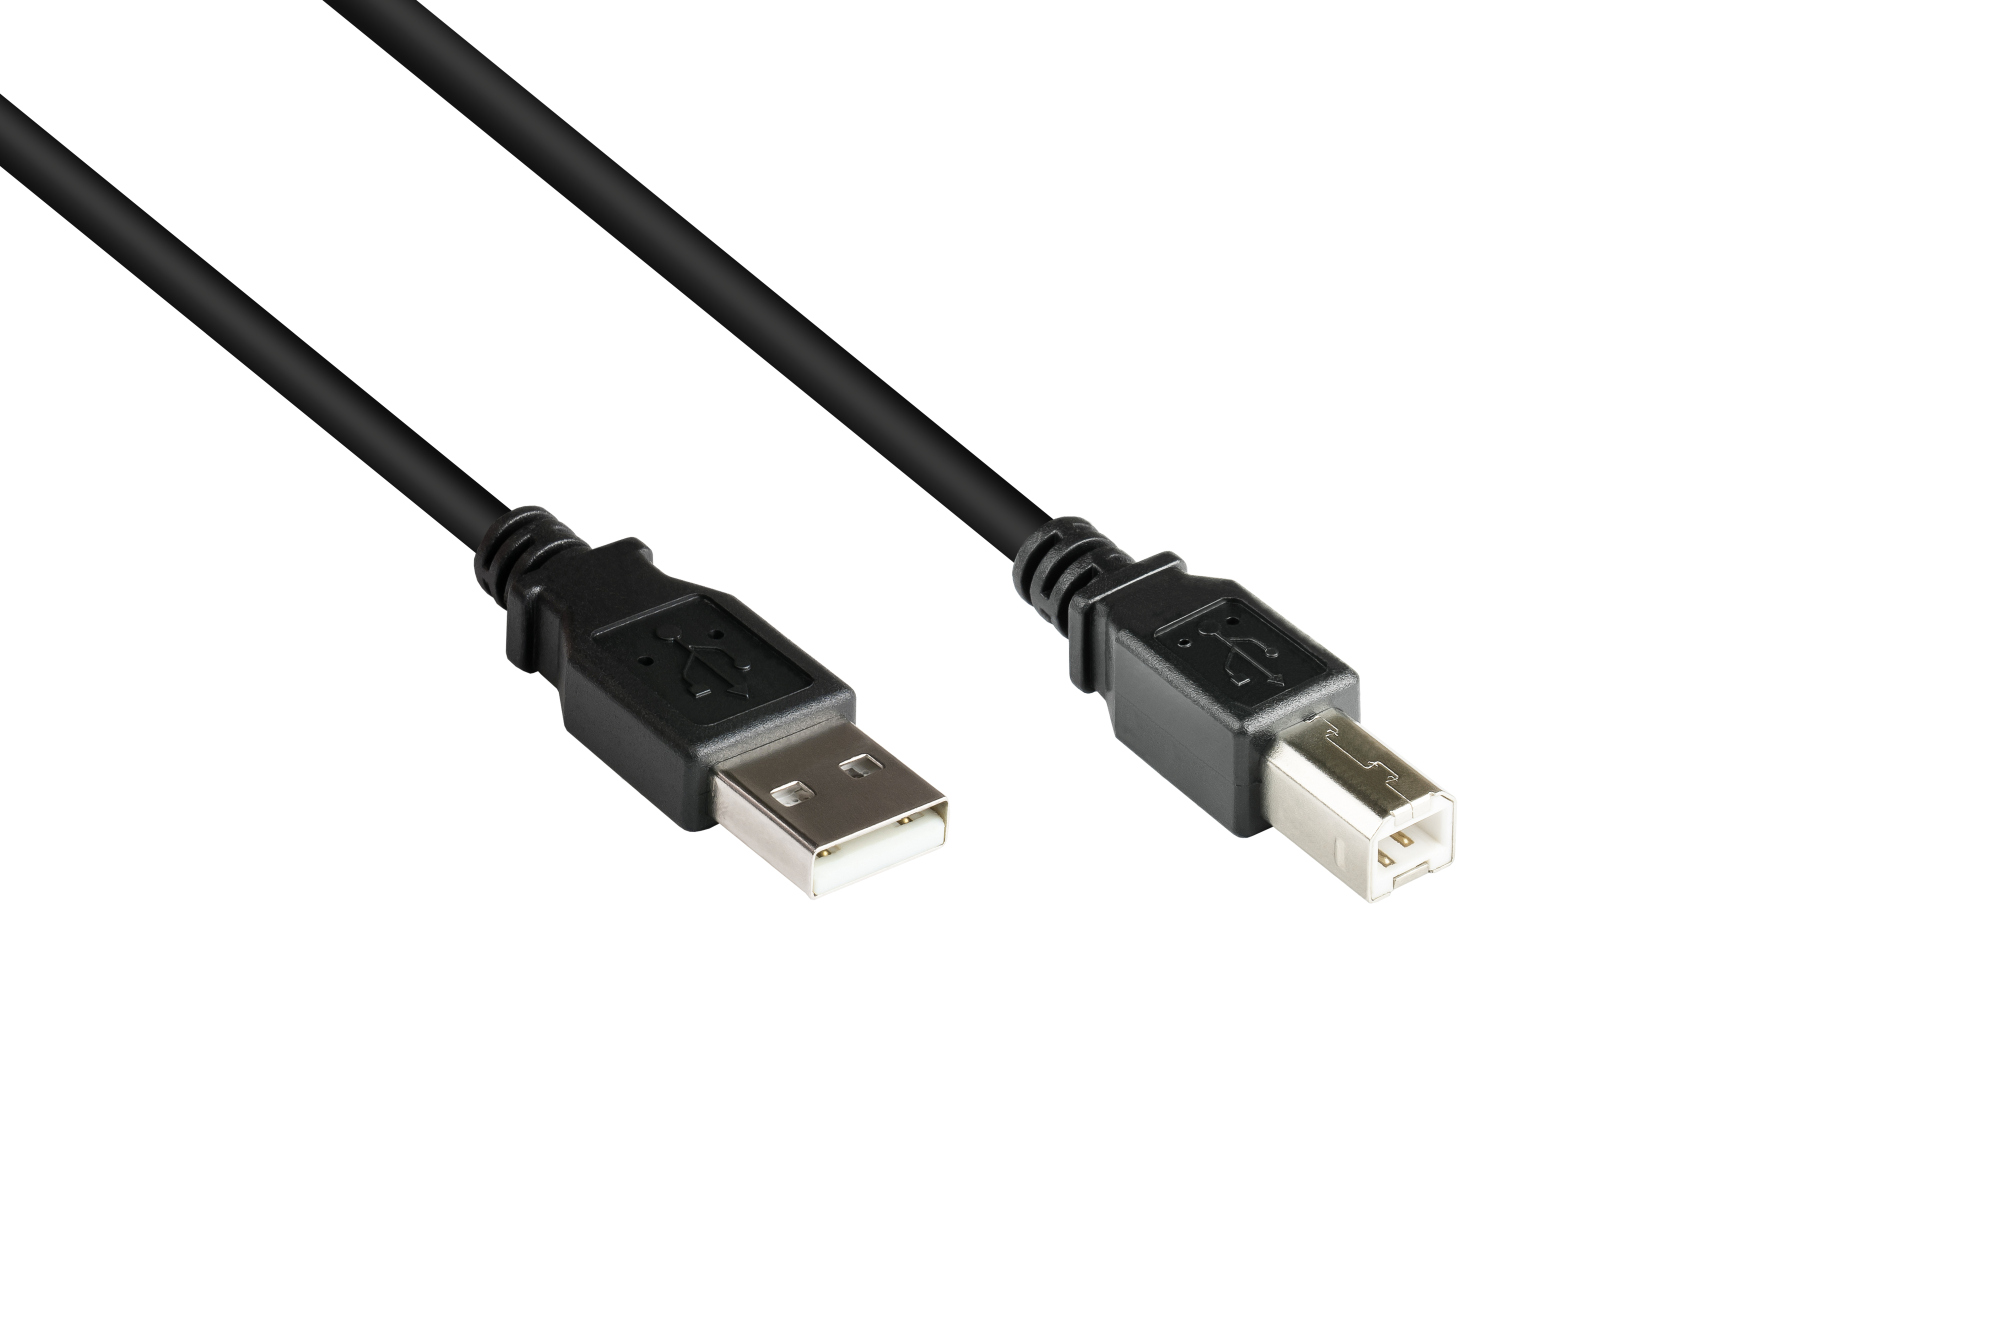 Anschlusskabel USB 2.0 Stecker A an Stecker B, schwarz, 1,8m